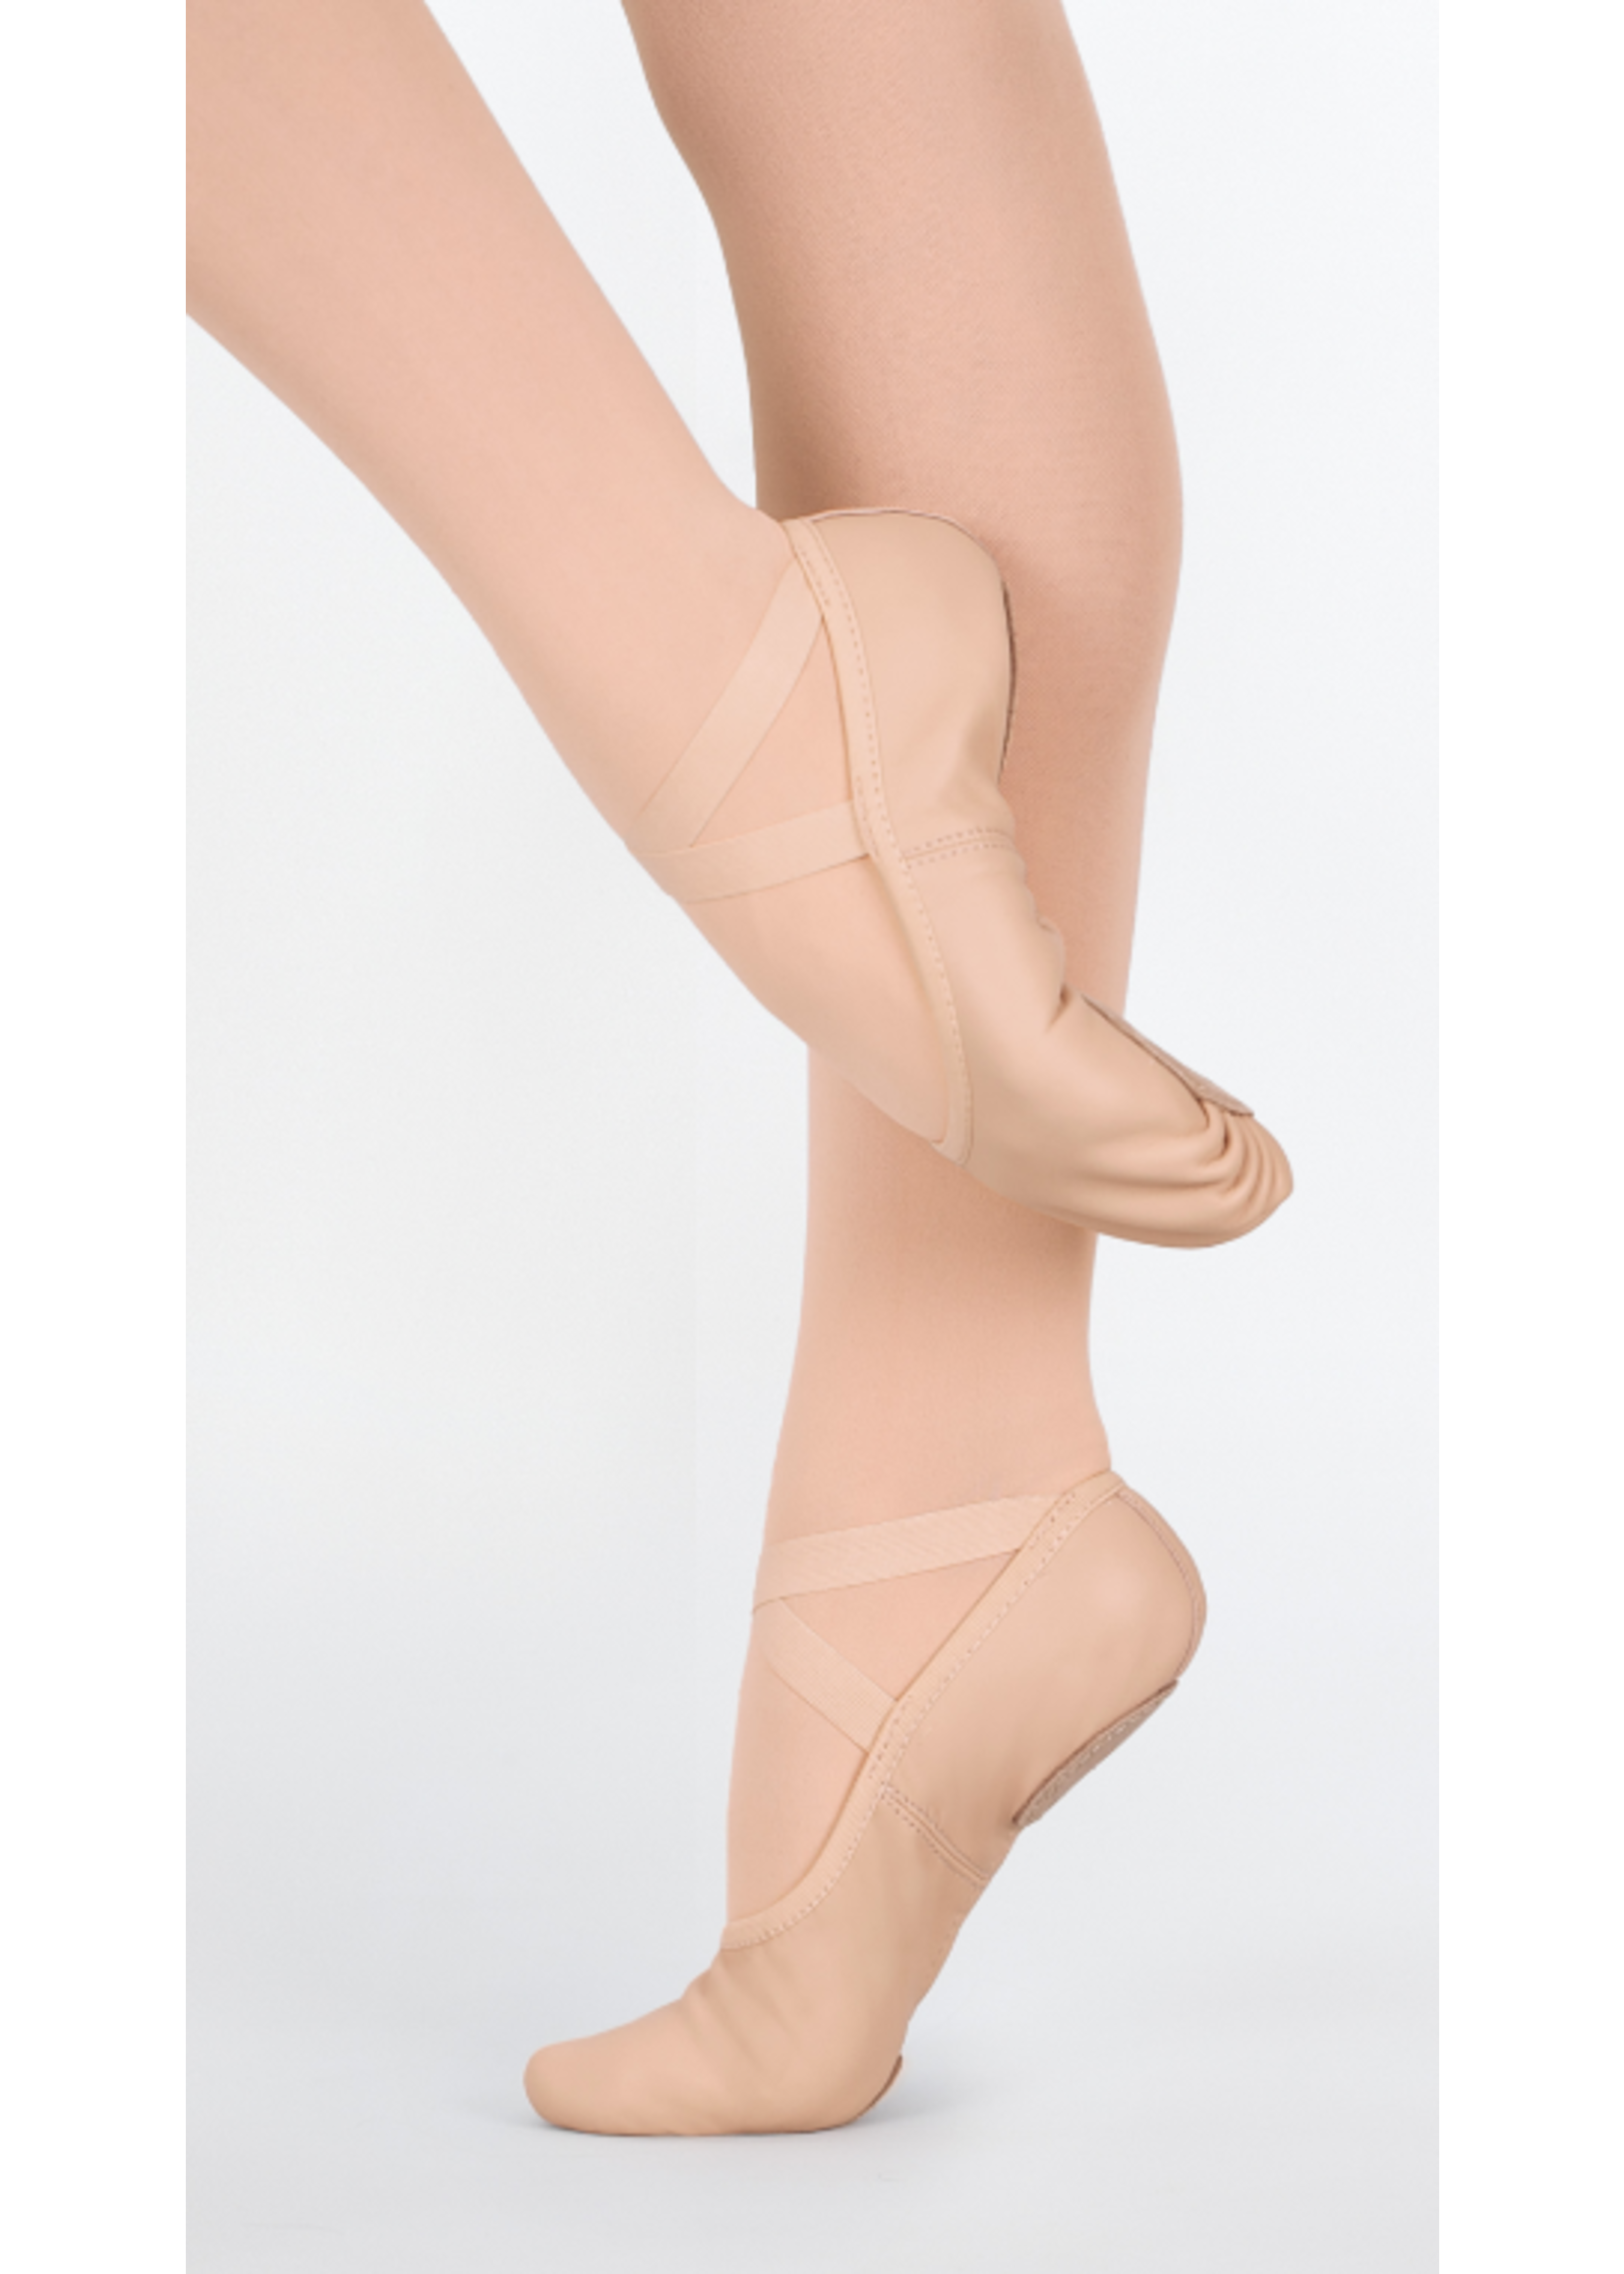 https://cdn.shoplightspeed.com/shops/657336/files/46108464/1652x2313x2/eurotard-eurotard-coupe-split-sole-leather-ballet.jpg